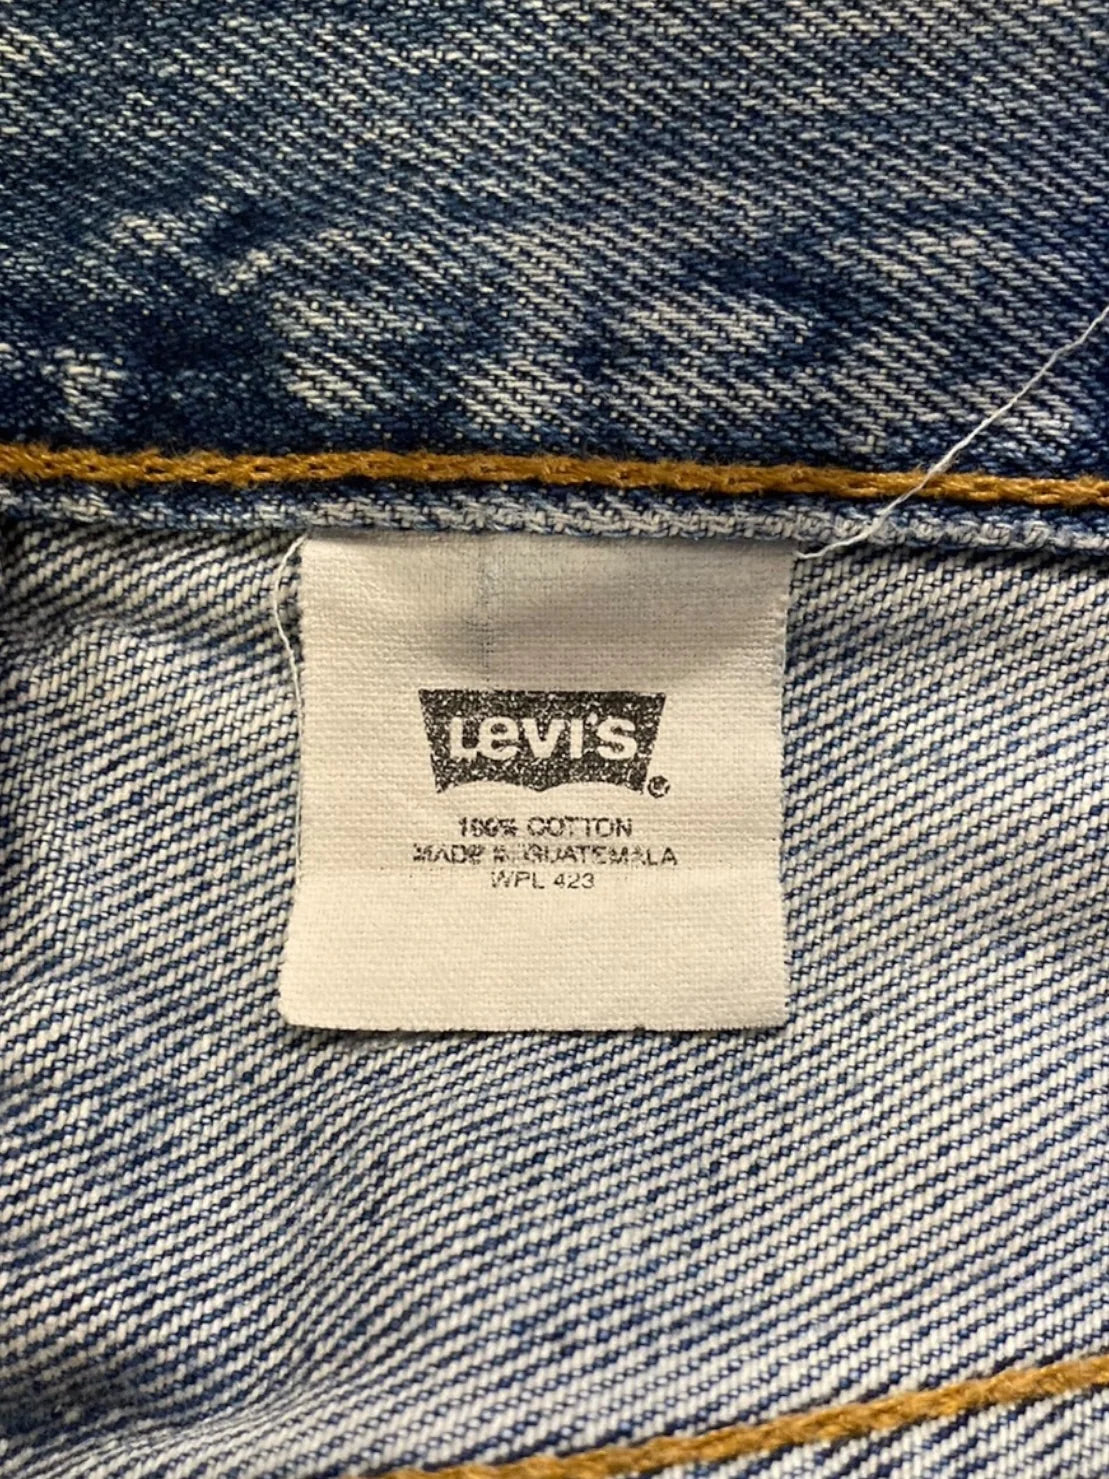 90s 90年代 Levi’s リーバイス 501 レギュラーストレート デニムパンツ